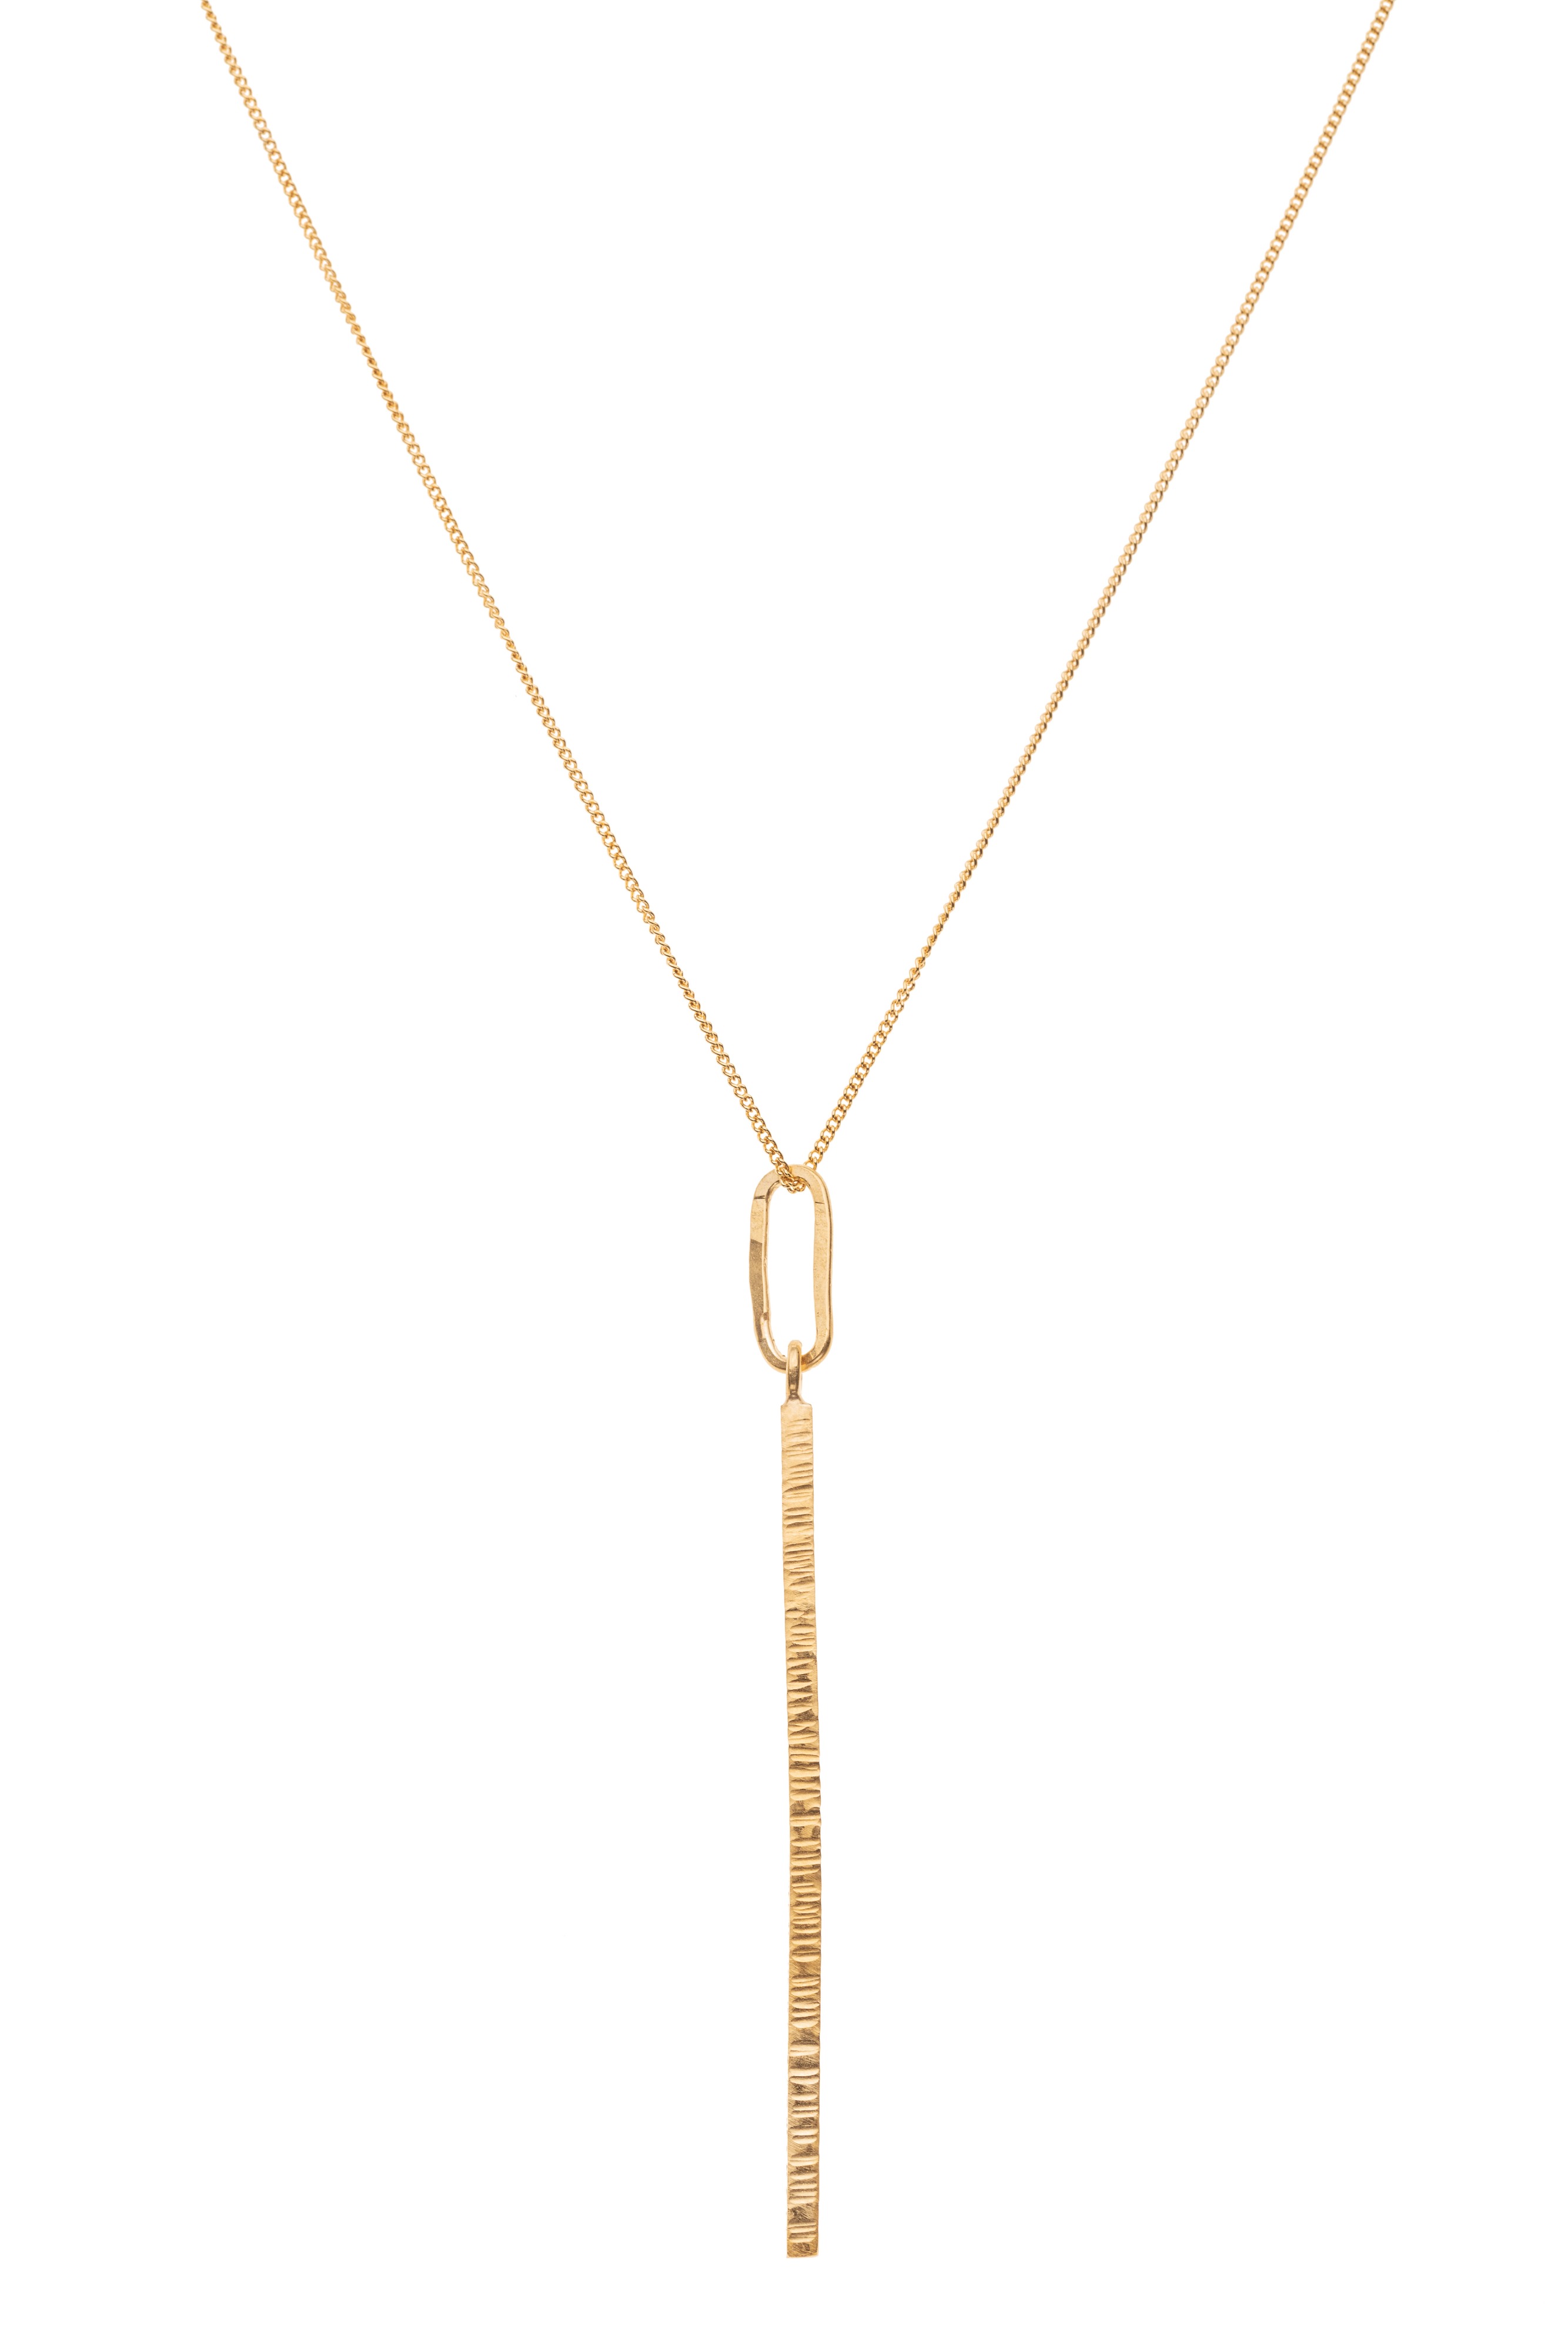 Blackbird Jewellery 9ct Gold Vermeil High Line Vertical Bar Necklace 